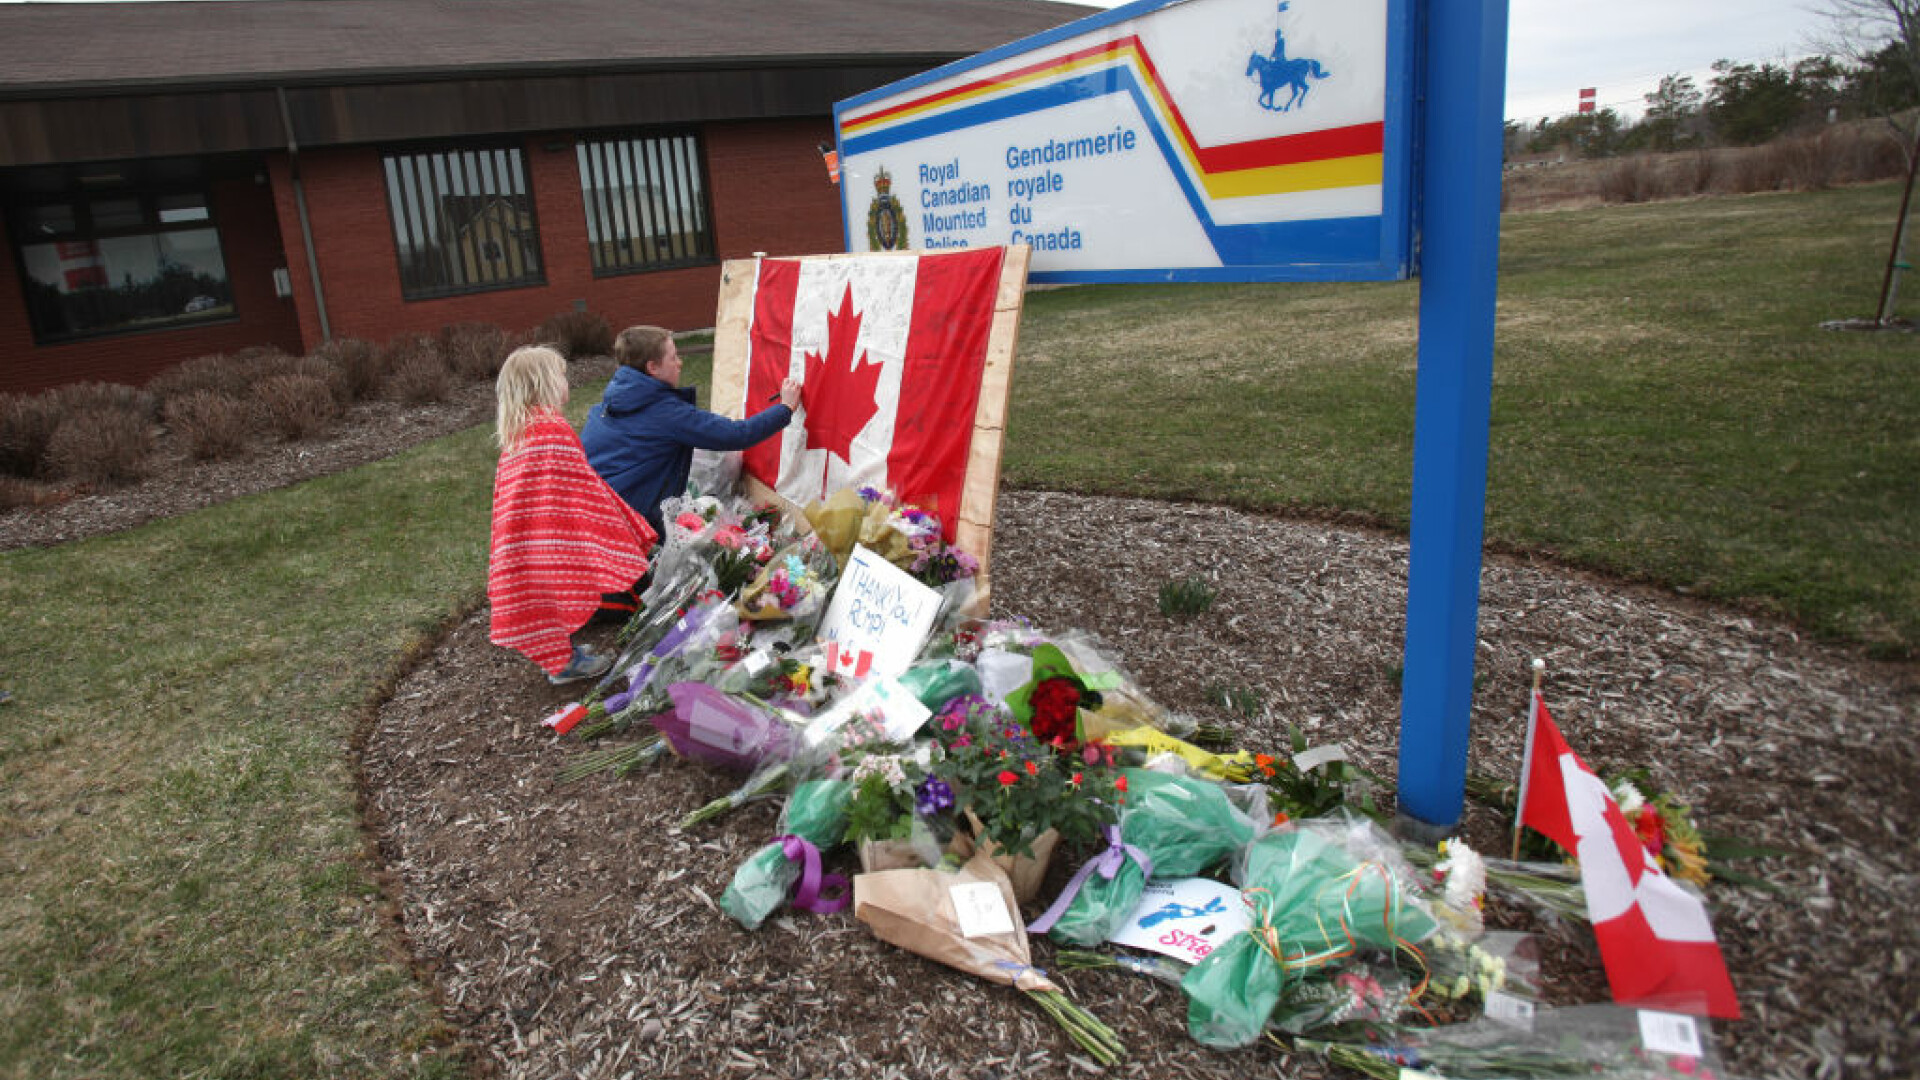 Nouă din cele 22 de victime ale atacului armat din Canada au murit în incendii, nu de gloanţe. Detalii cutremurătoare